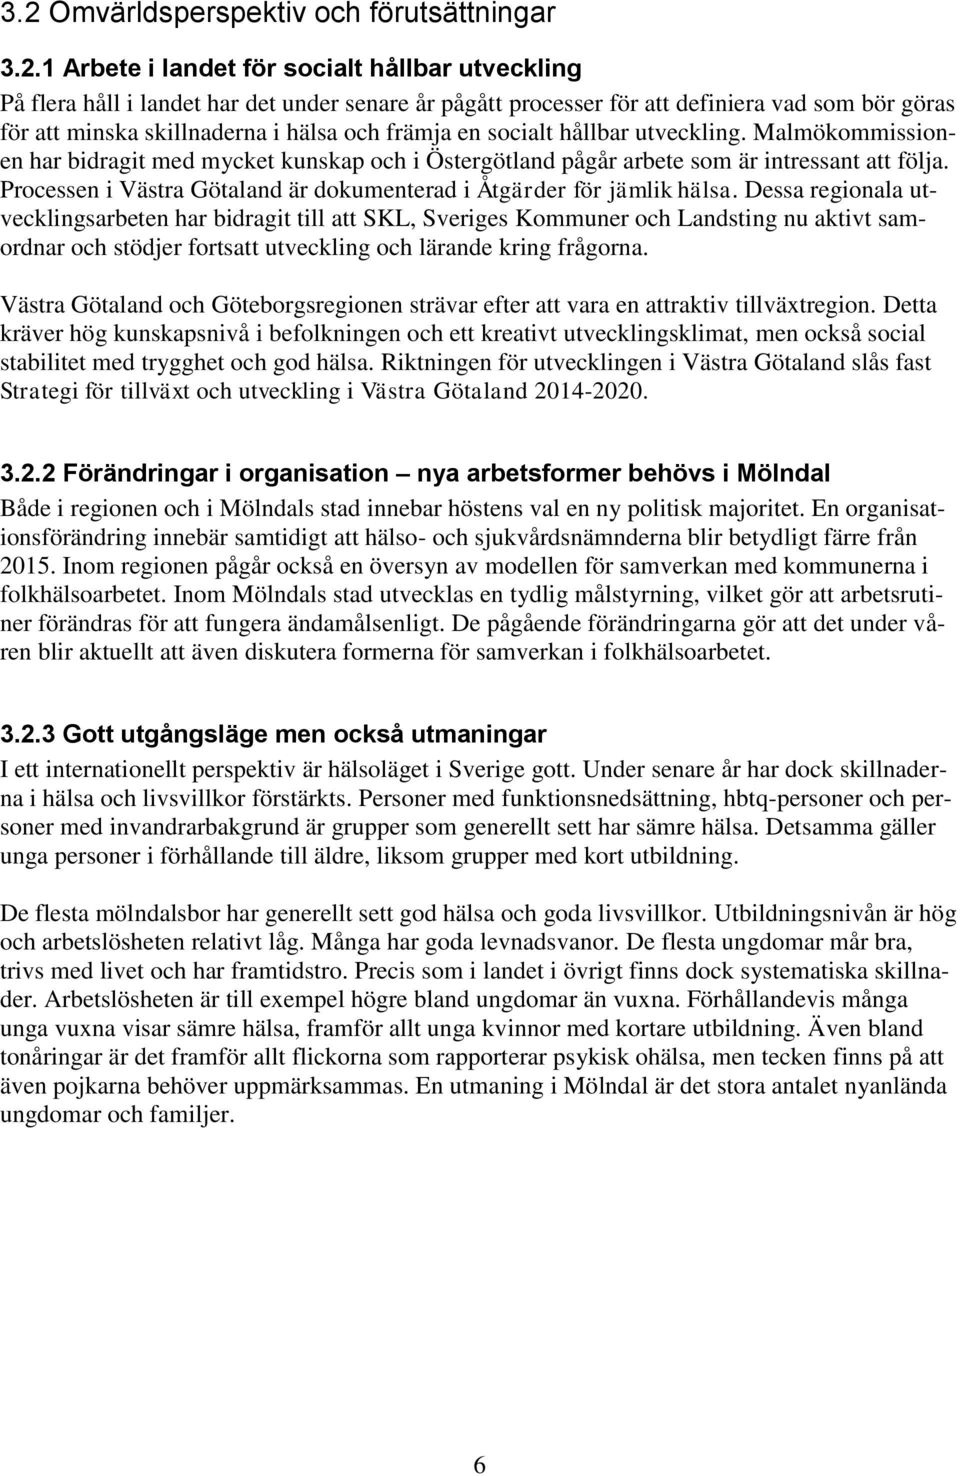 Processen i Västra Götaland är dokumenterad i Åtgärder för jämlik hälsa.